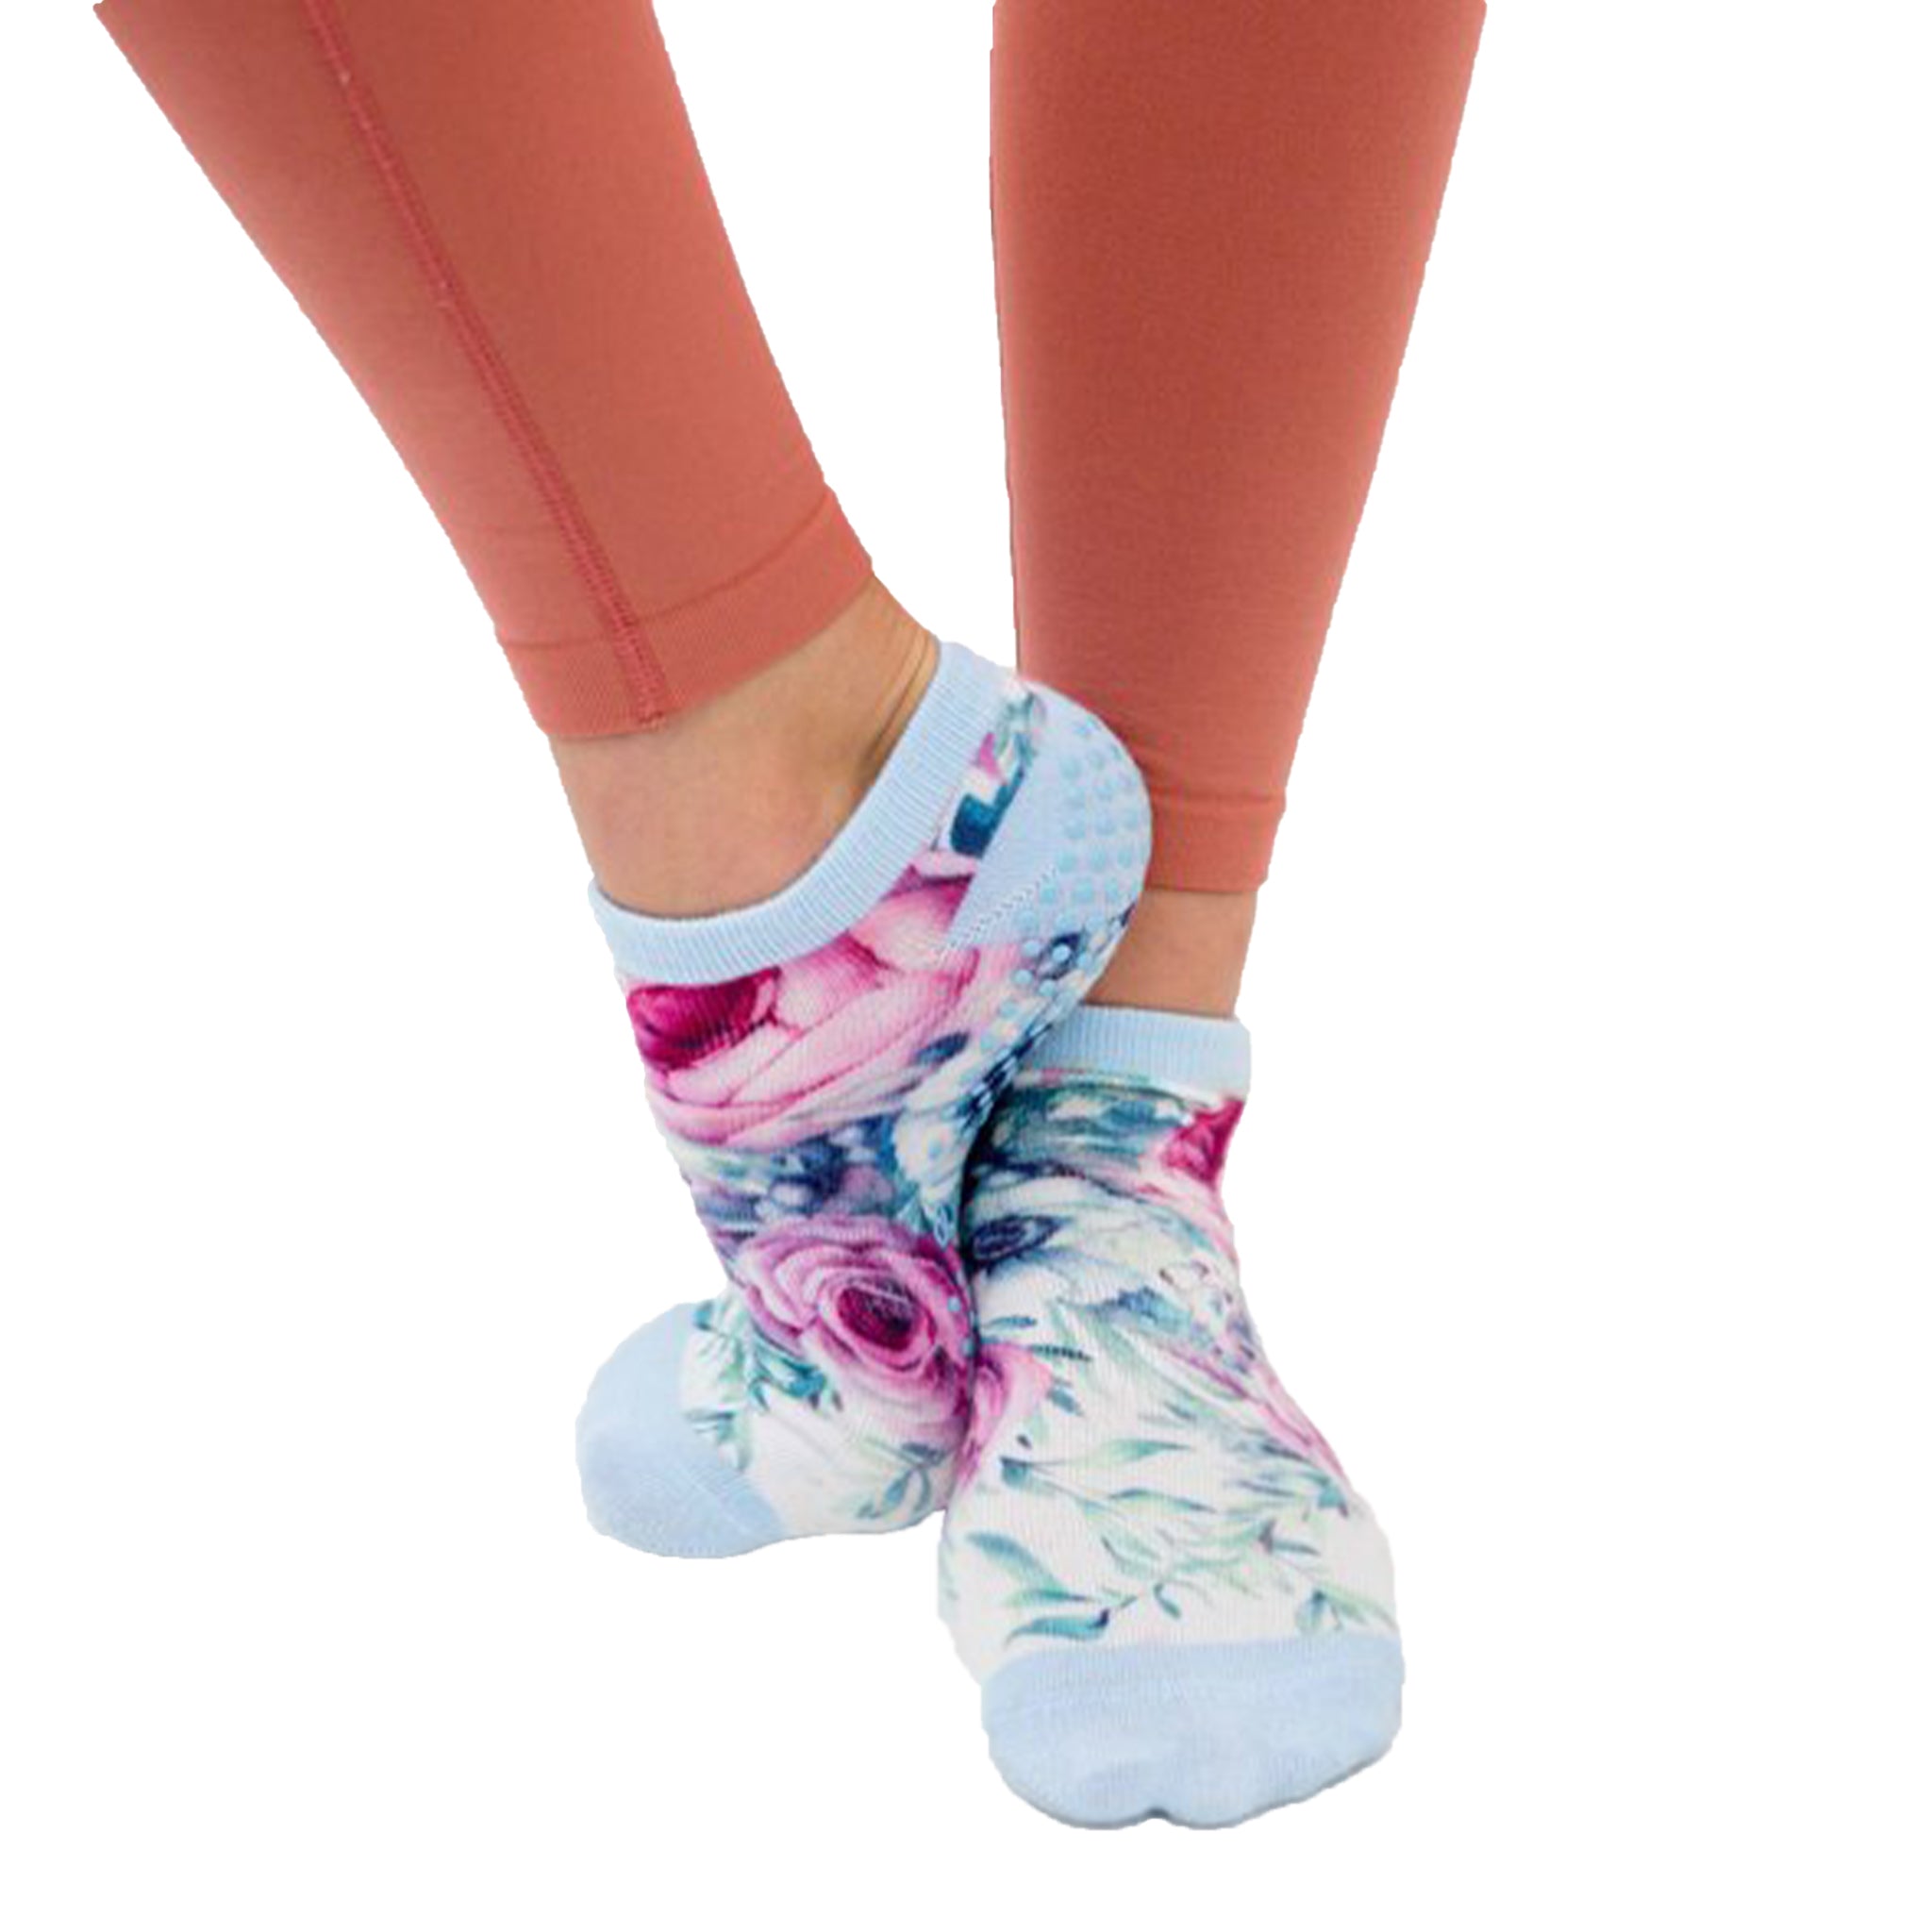 Non Slip Yoga Socks for Girls 5-8 Years Old